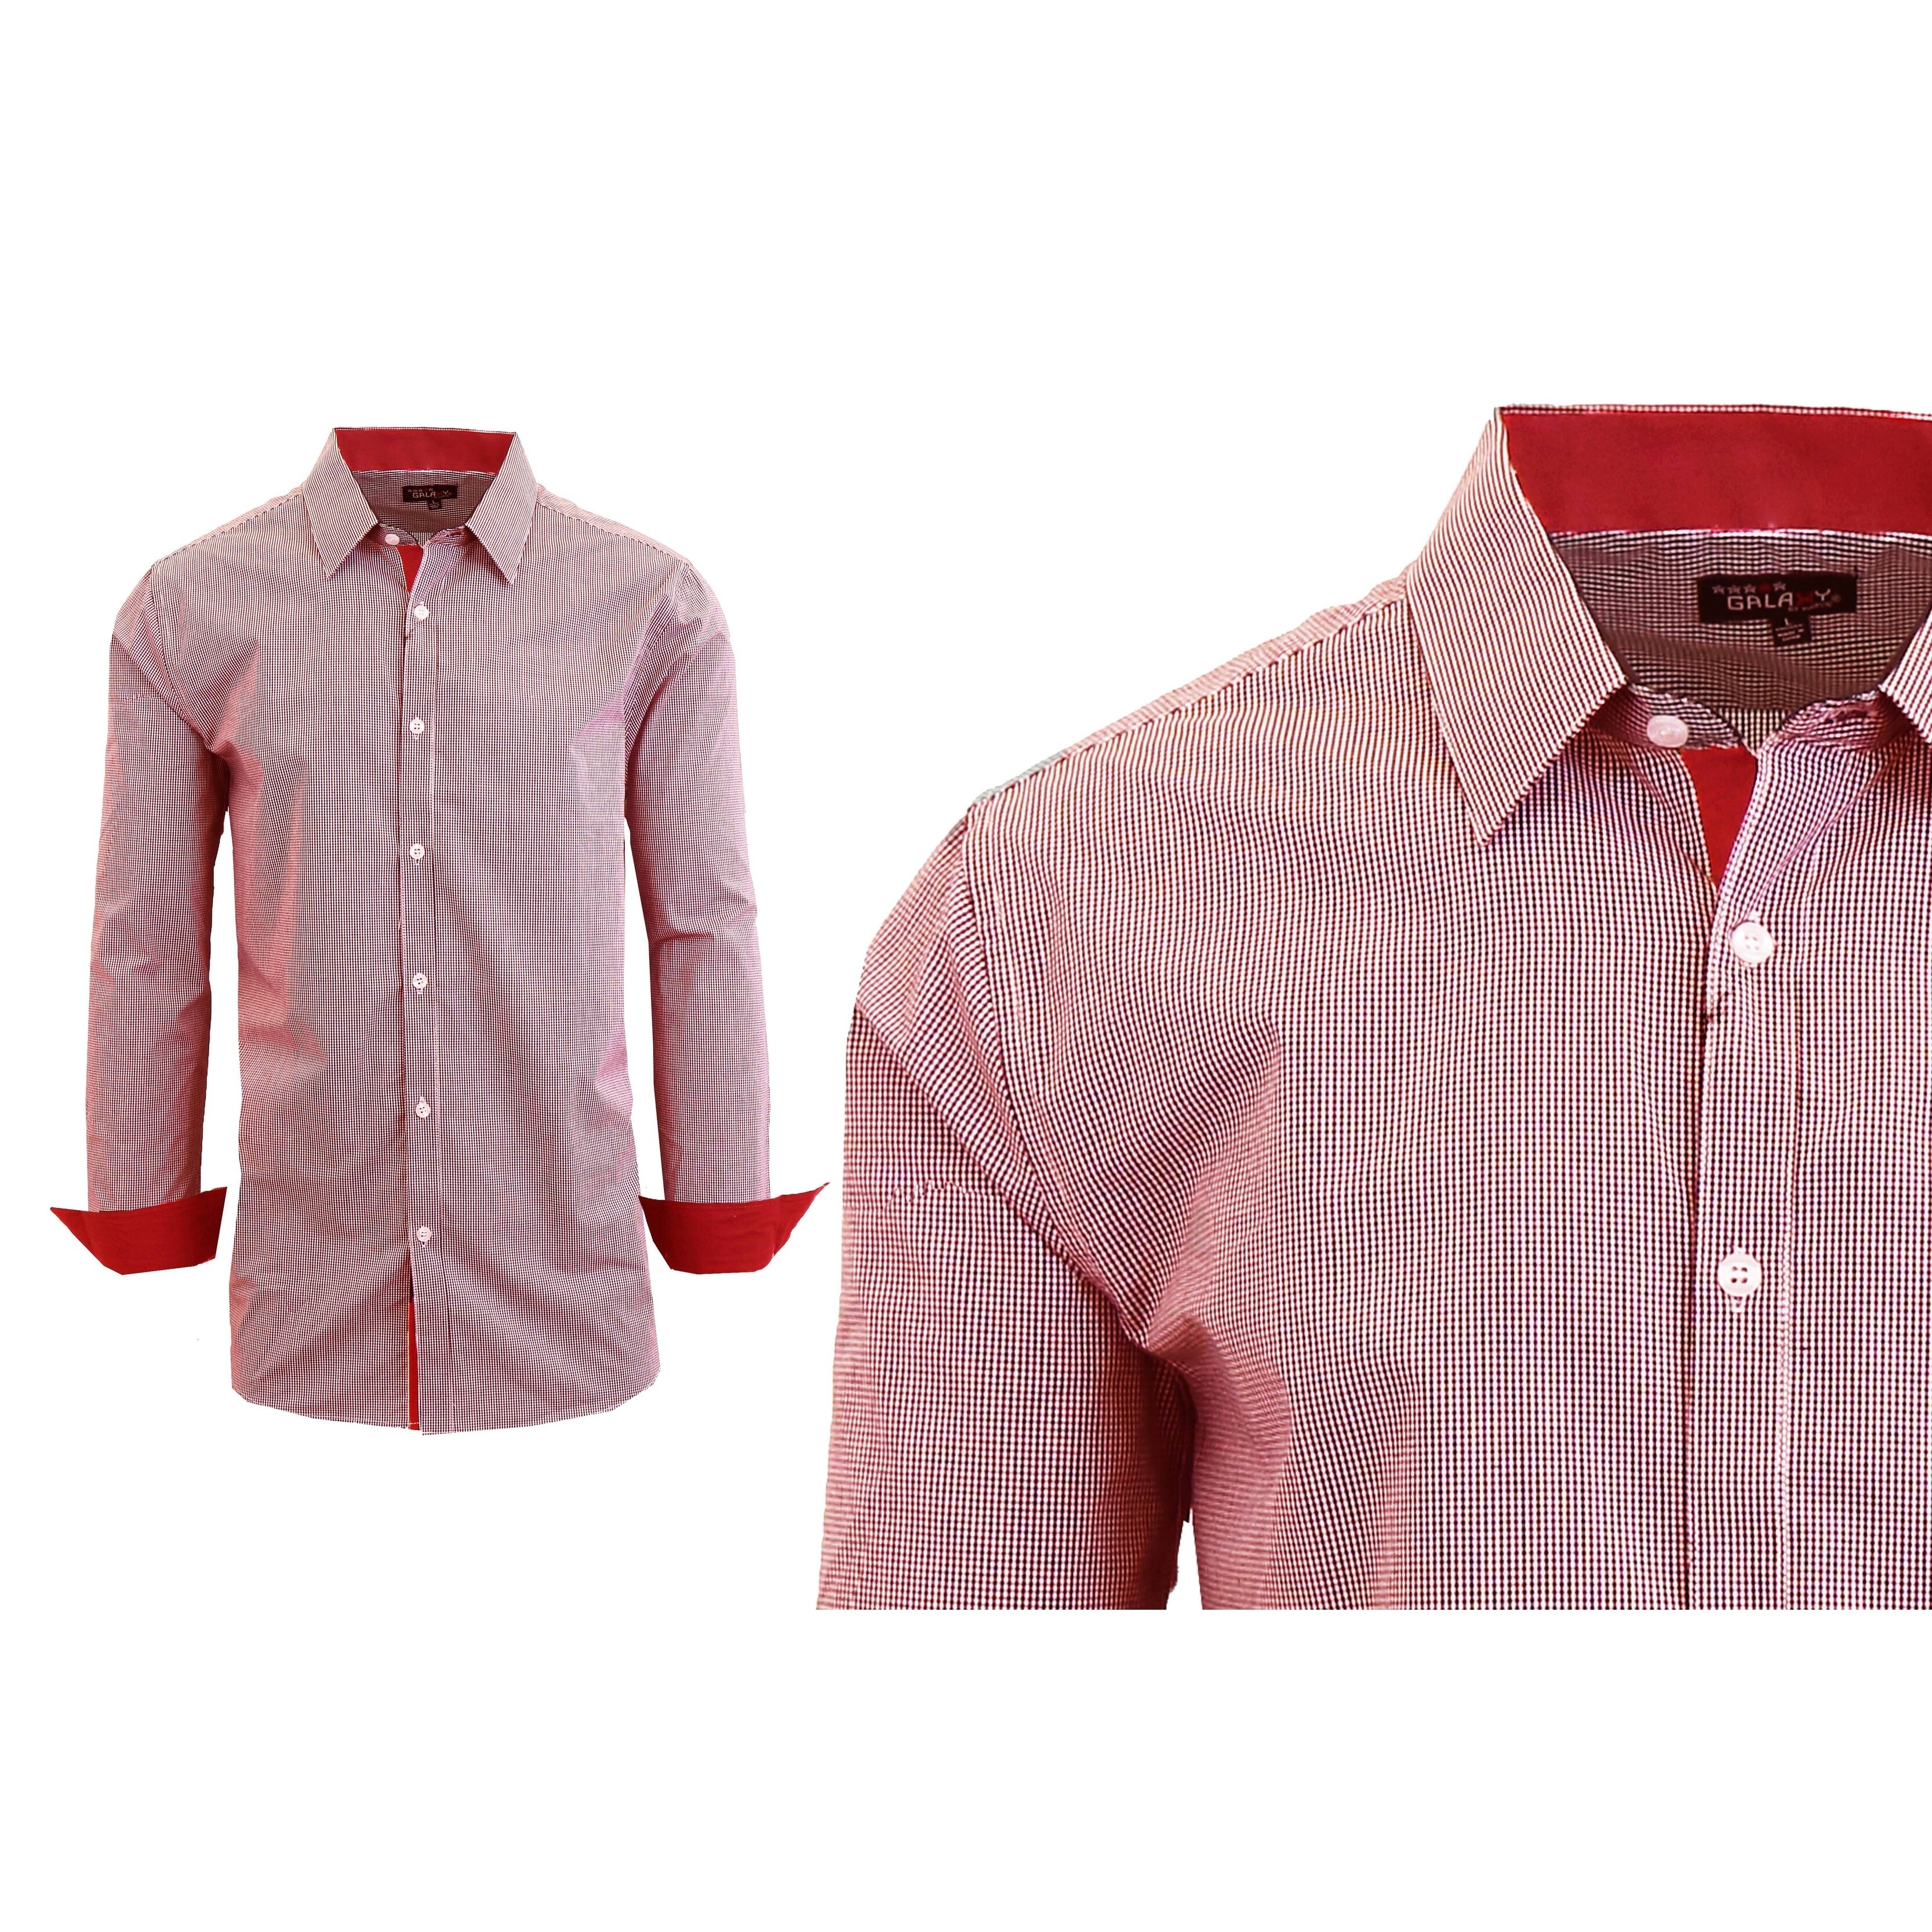 pink button down dress shirt